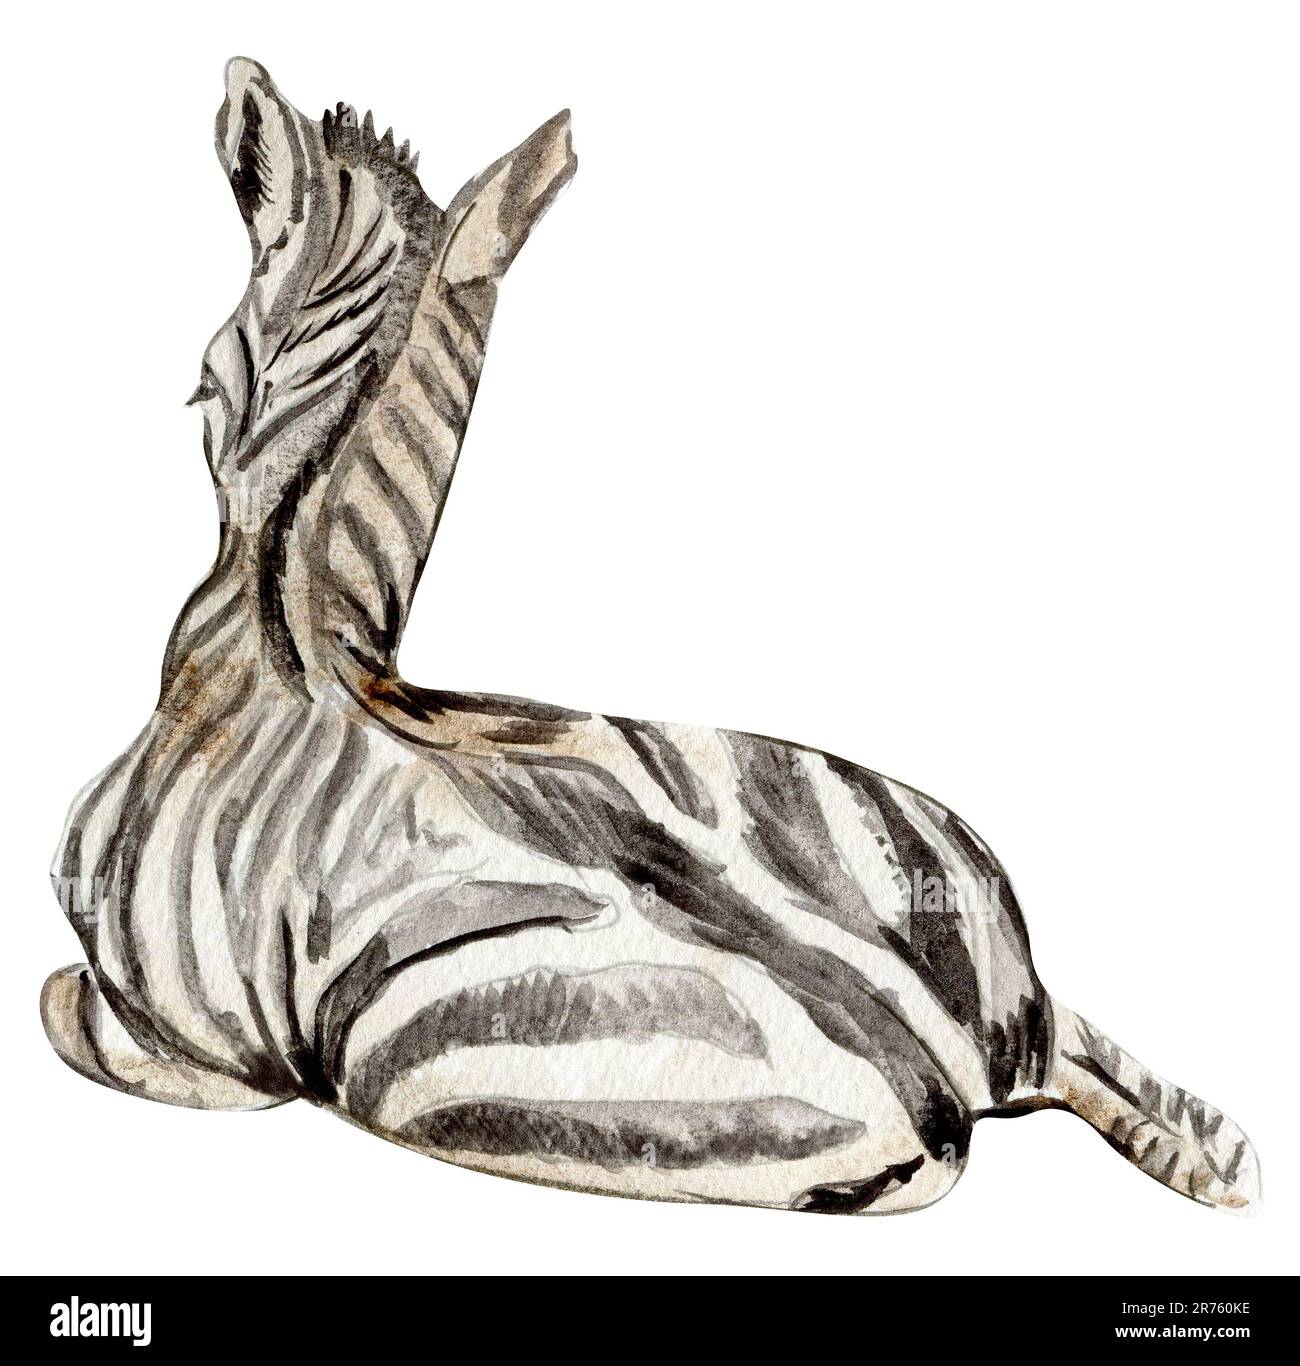 Zebra-Illustration, Waterrcolor handgezeichnetes tropisches Tier. Design für Babyparty, Geburtstag, Kuchen, Weihnachtsfeier, Grußkarte Stockfoto